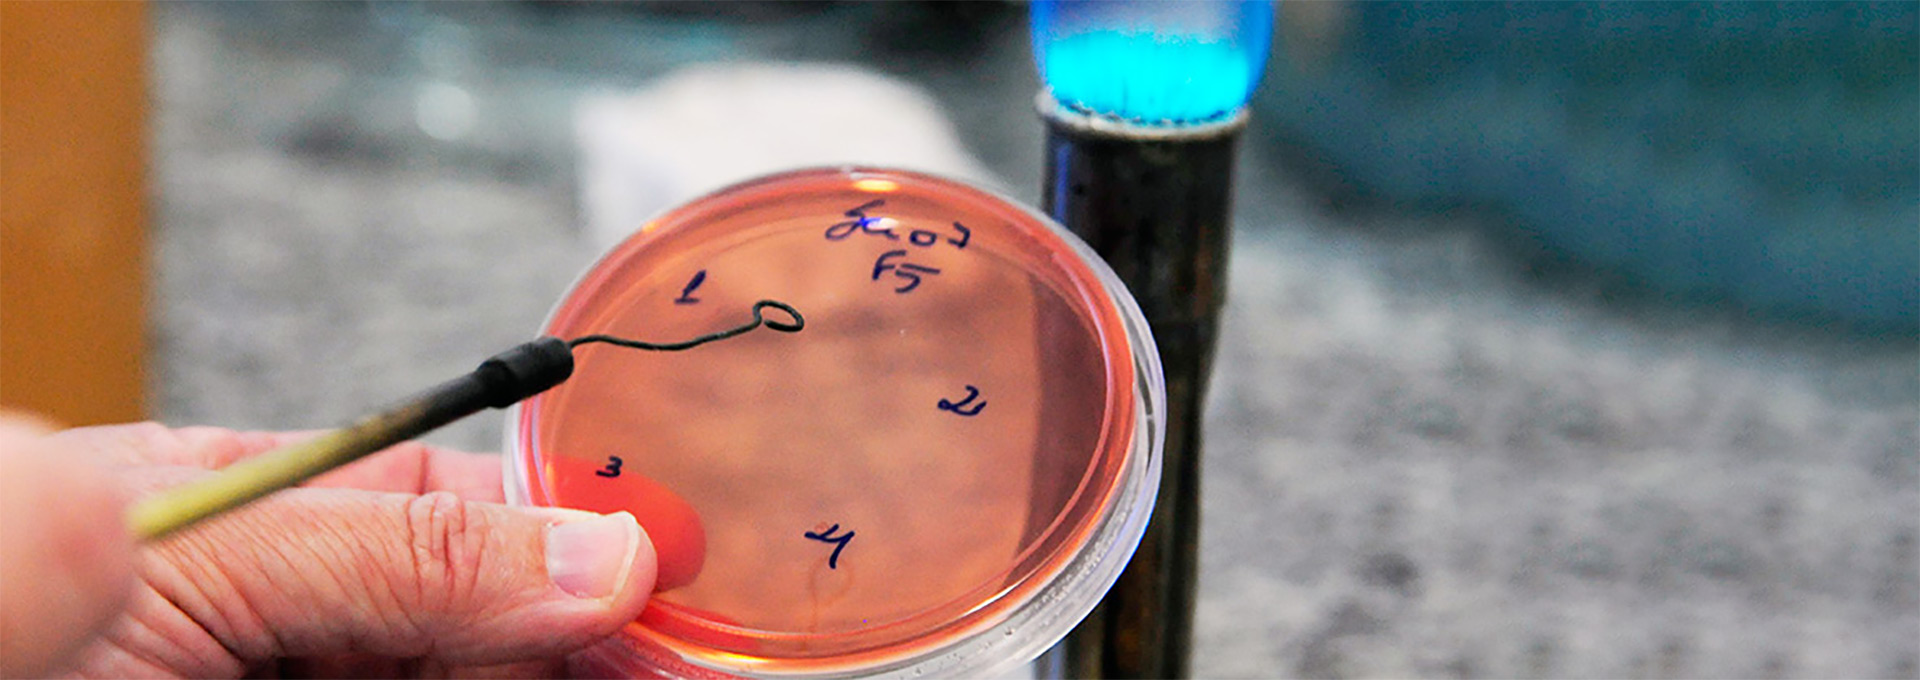 Cultura da bactéria Shigella sonnei em laboratório no Instituto de Biologia